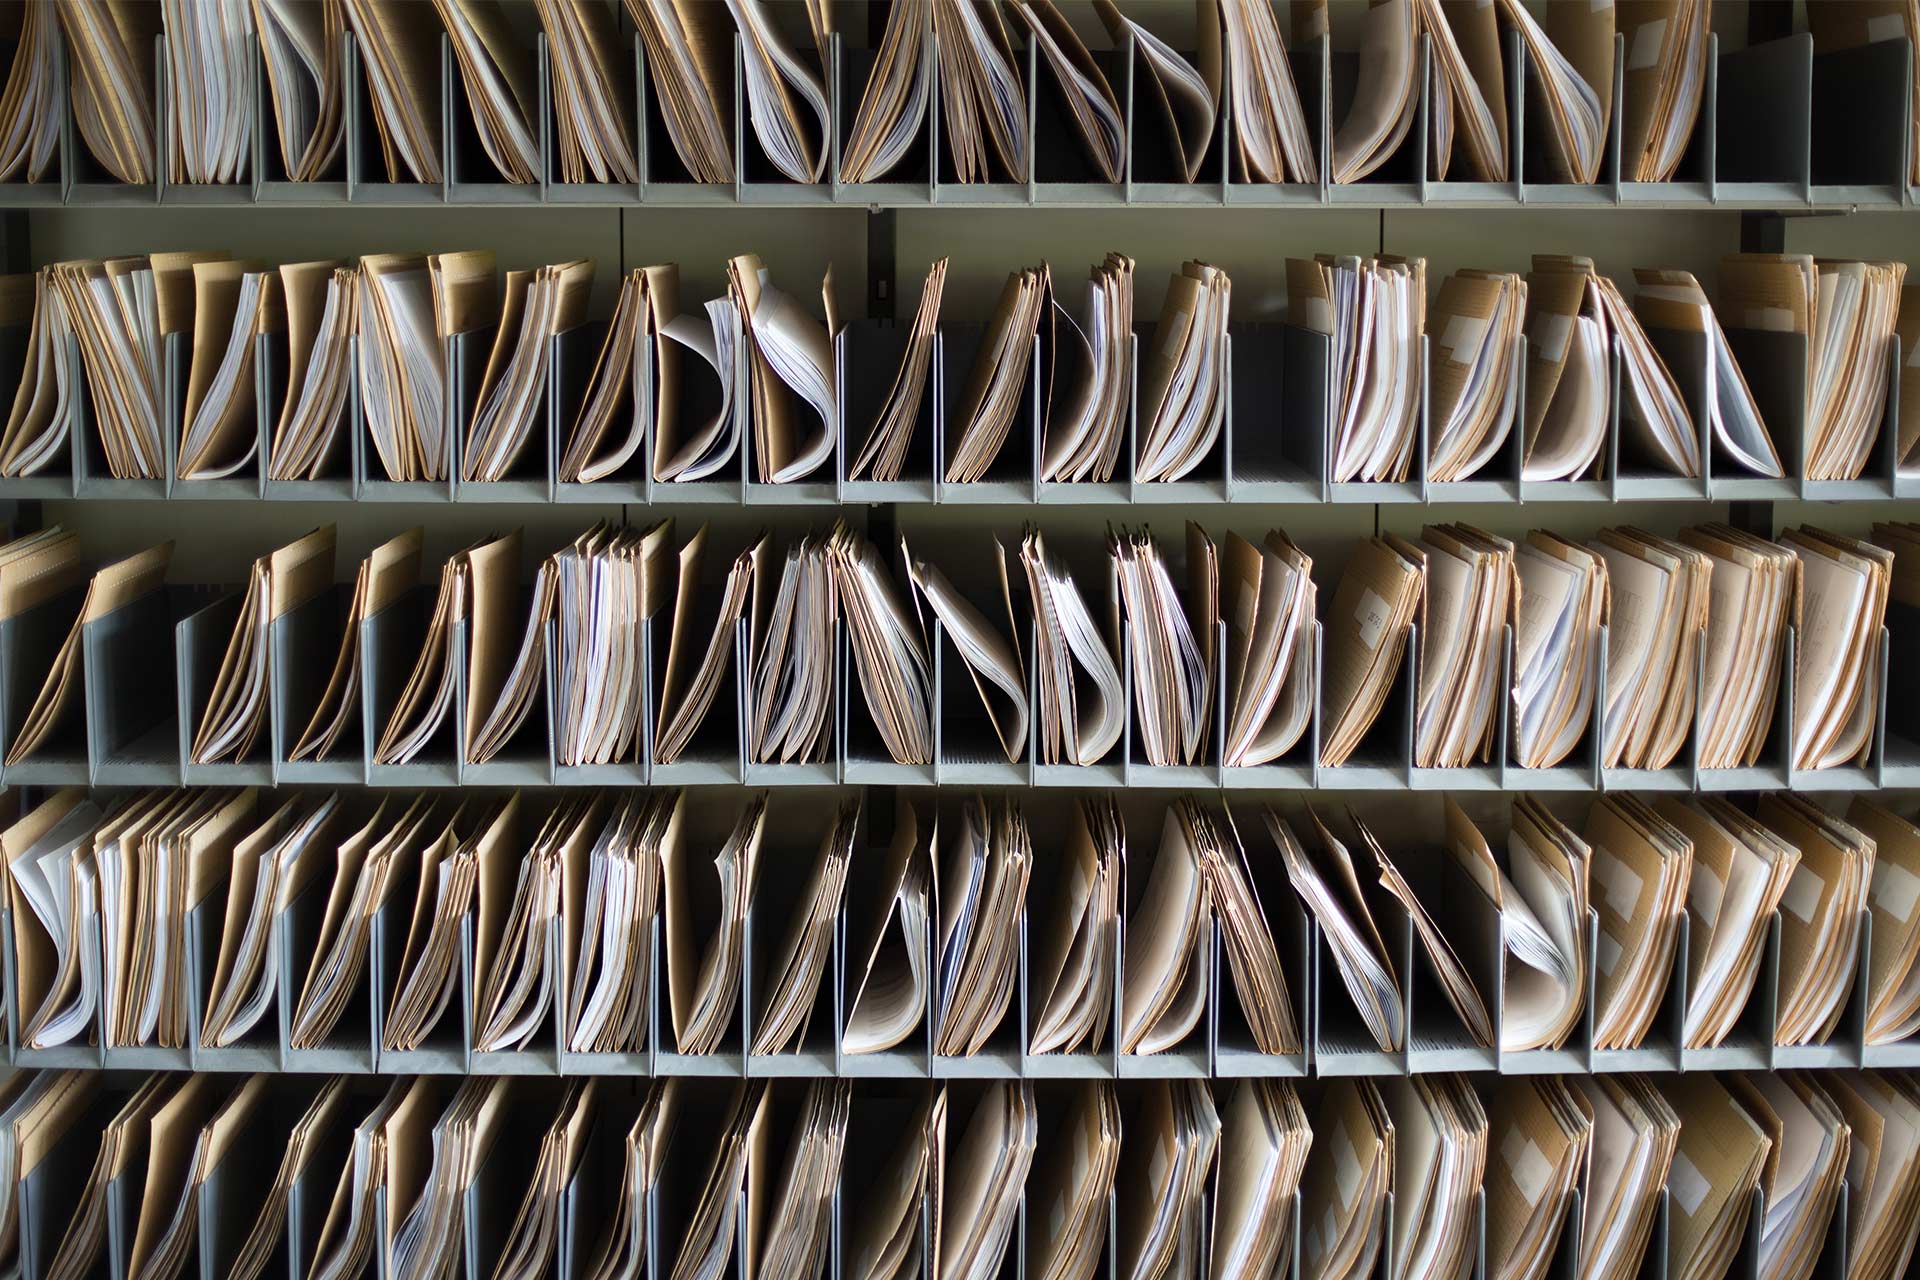 Filas de documentos de papel en carpetas organizadas en compartimentos.